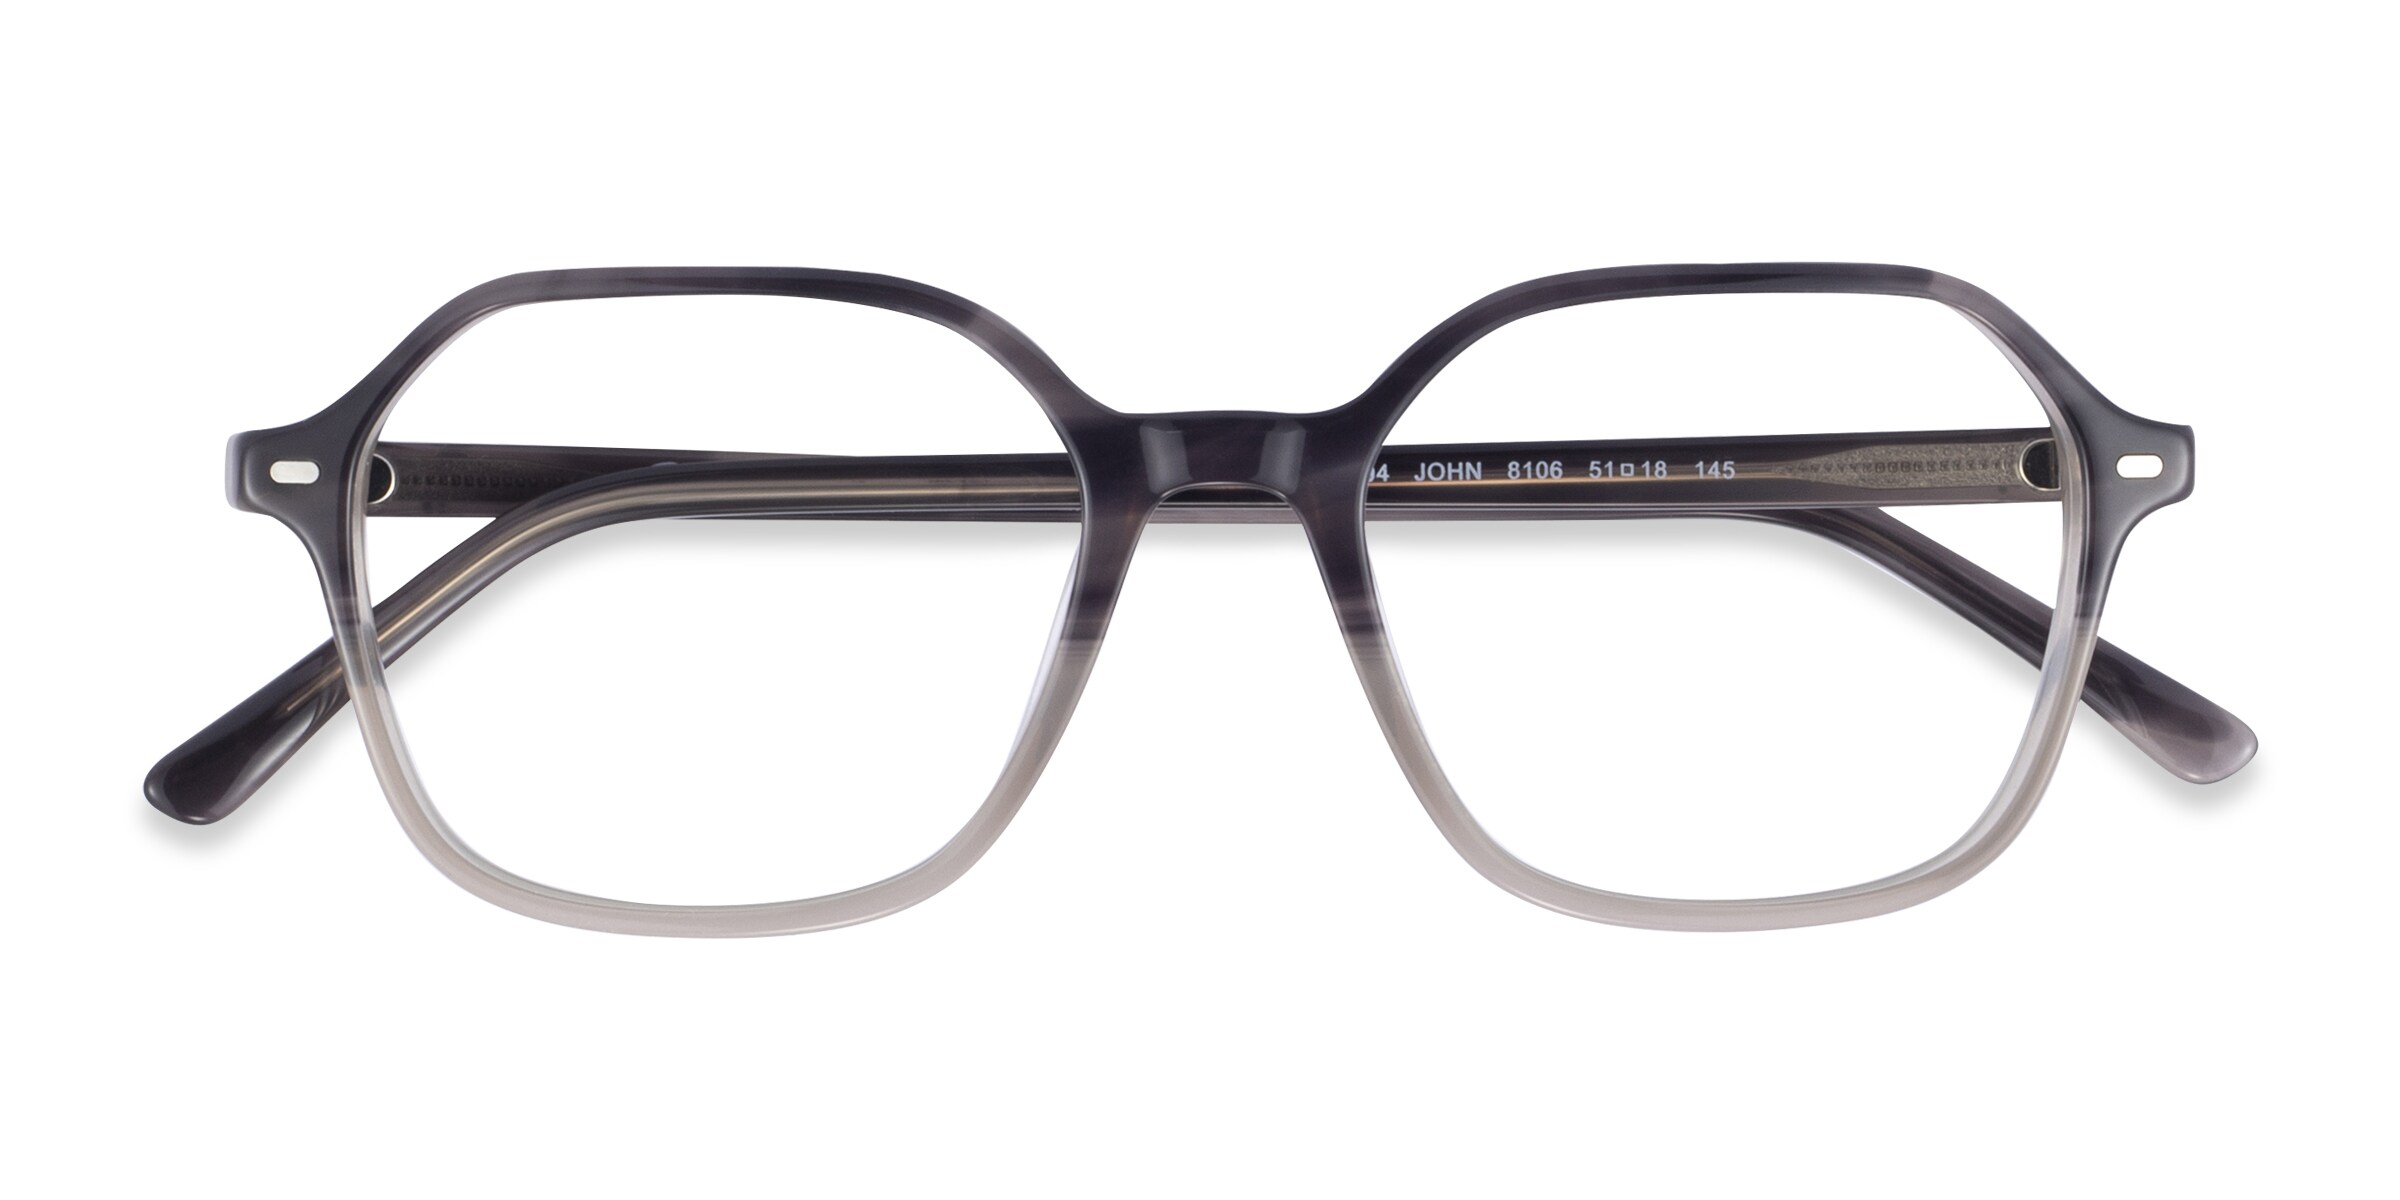 Ray-Ban RB5394 John - Square Gray Clear Tortoise Frame Eyeglasses 